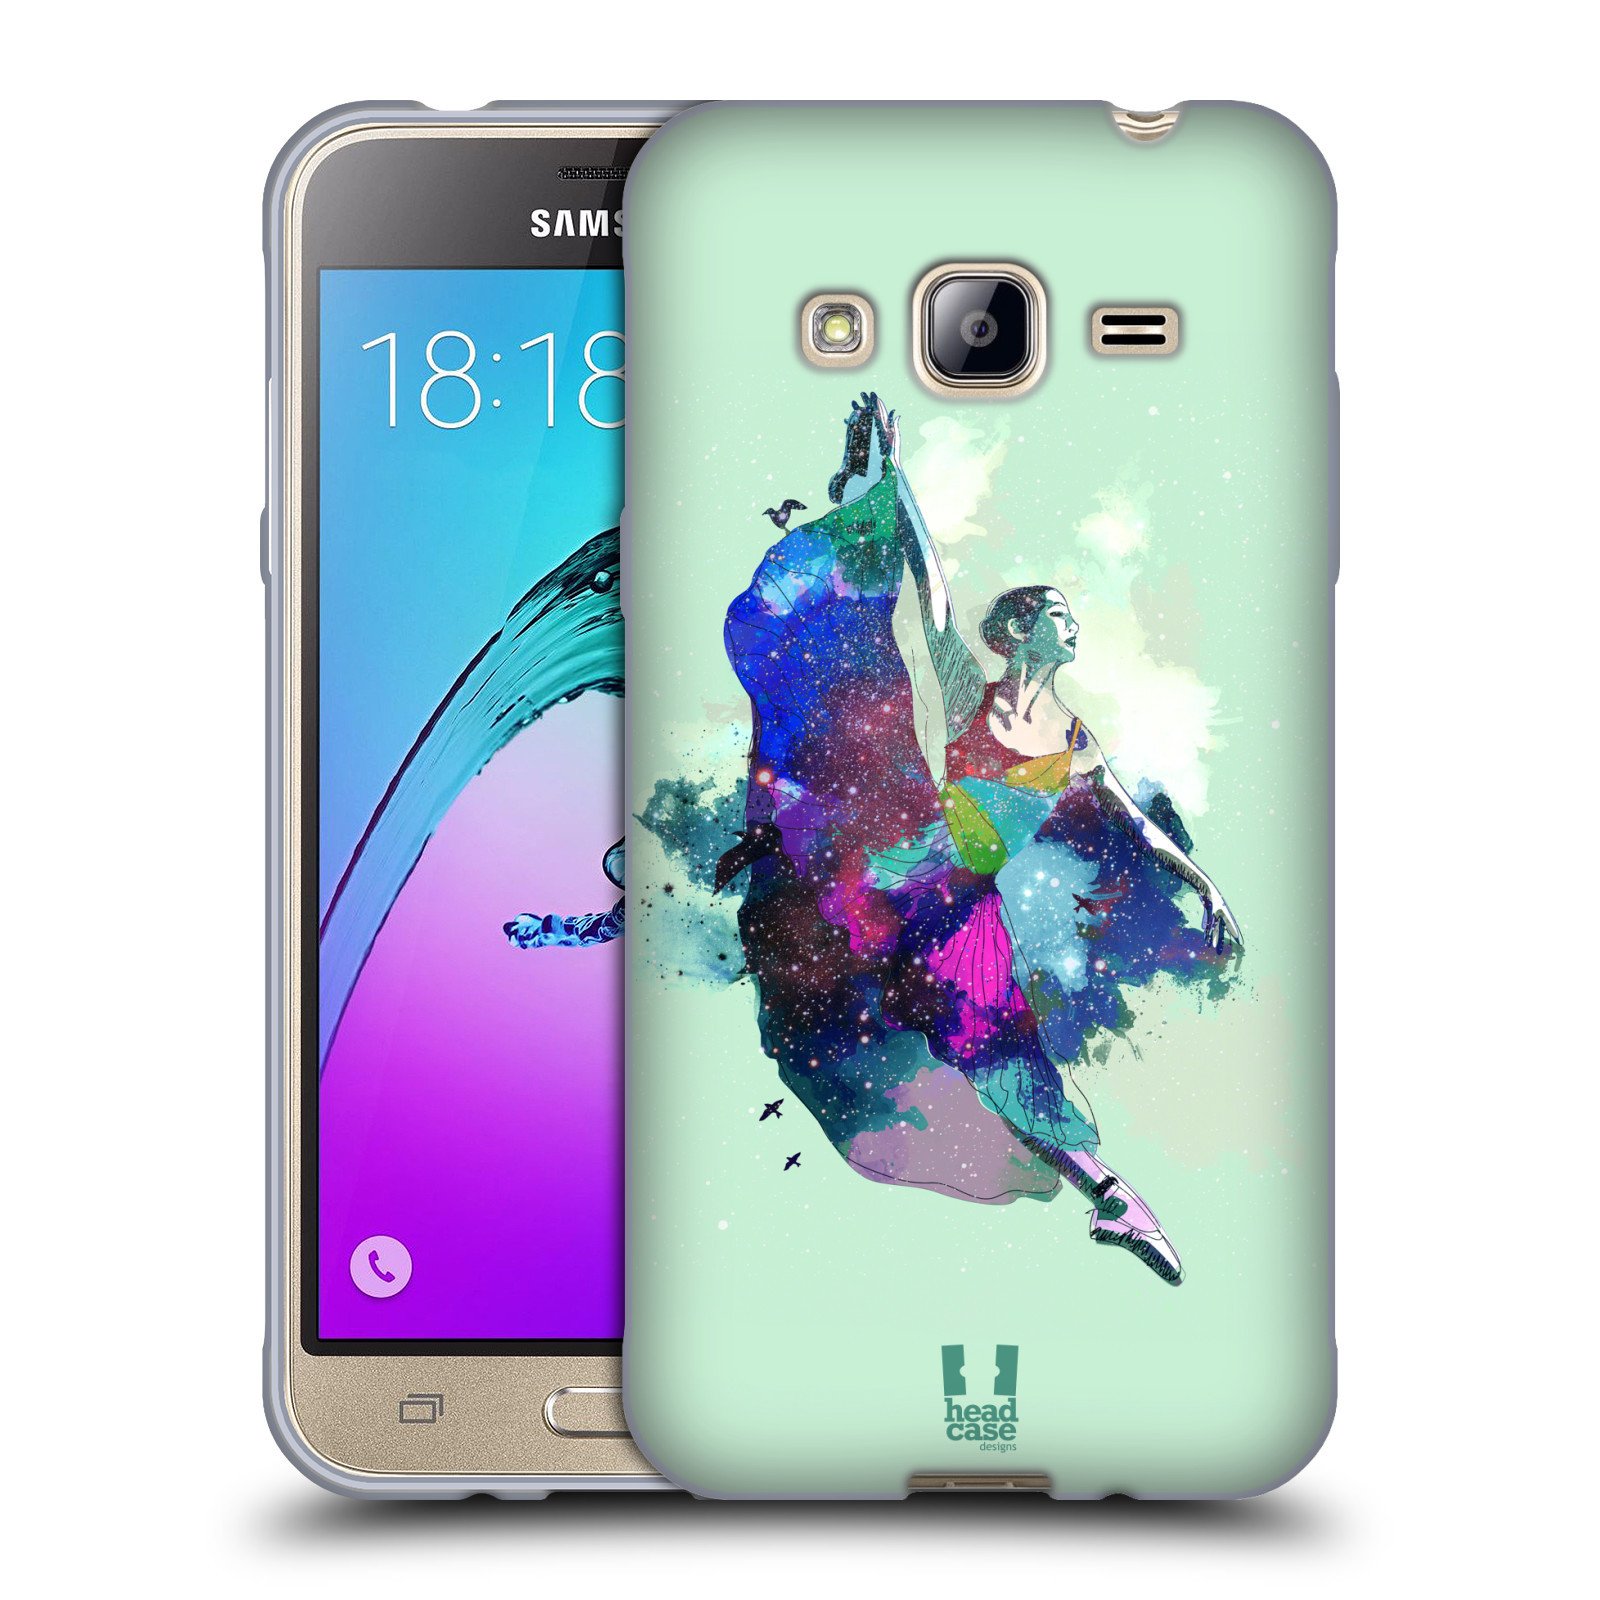 HEAD CASE silikonový obal na mobil Samsung Galaxy J3, J3 2016 vzor Taneční motiv BALETKA